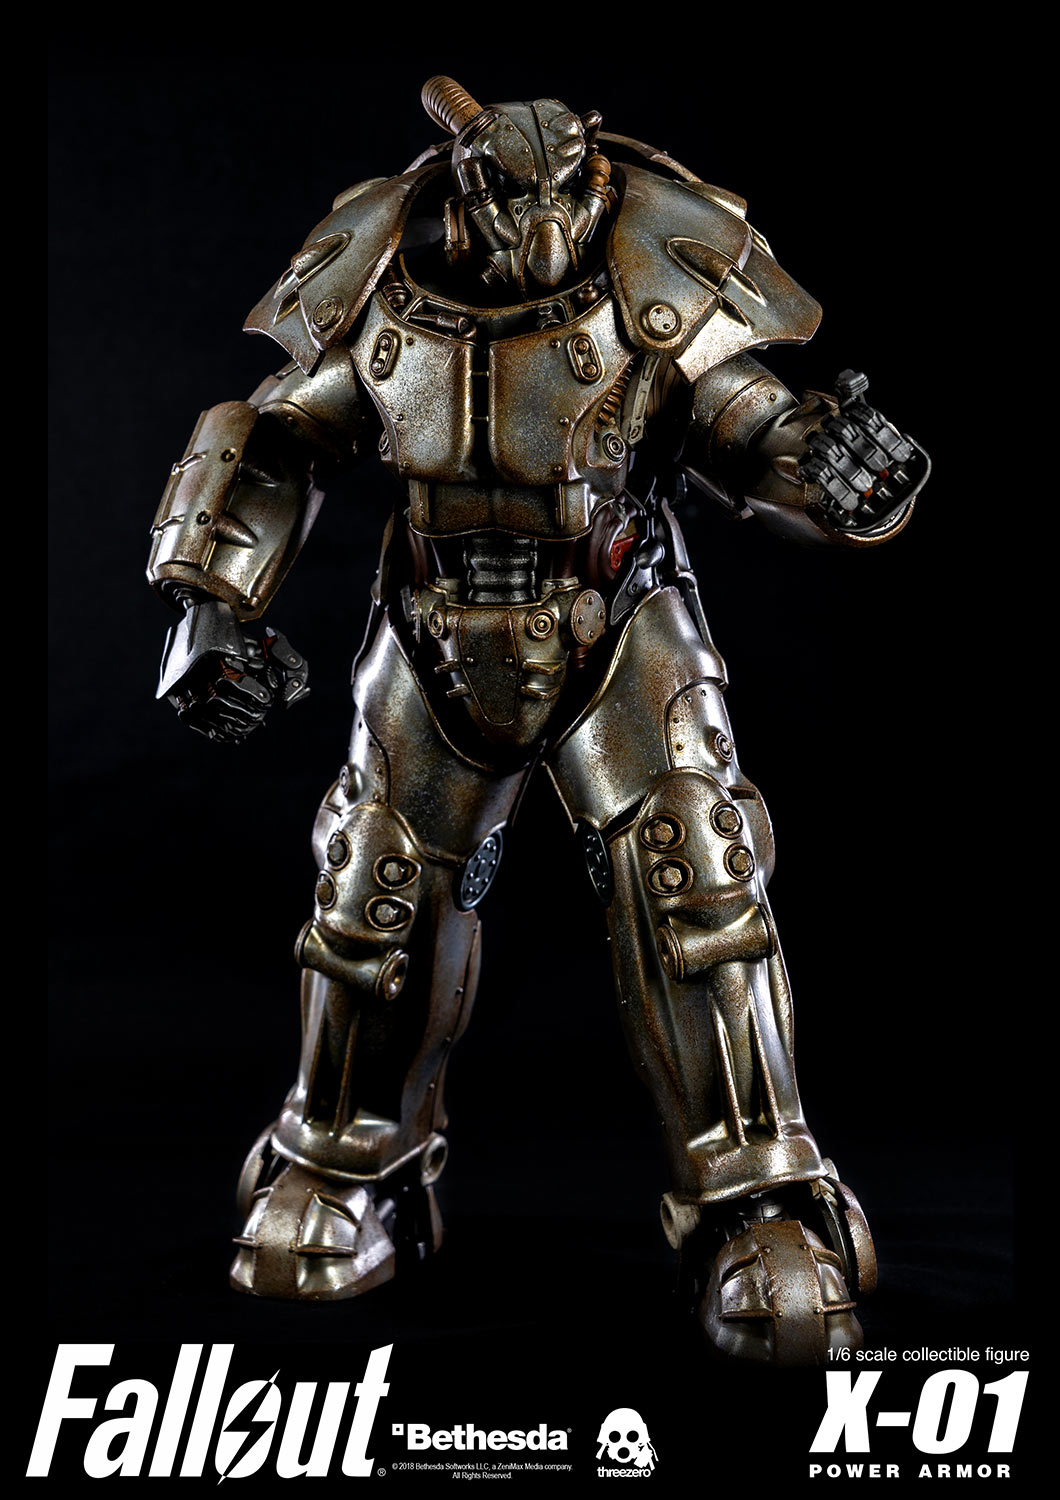 Falloutx 01 Power Armor Threezero Store